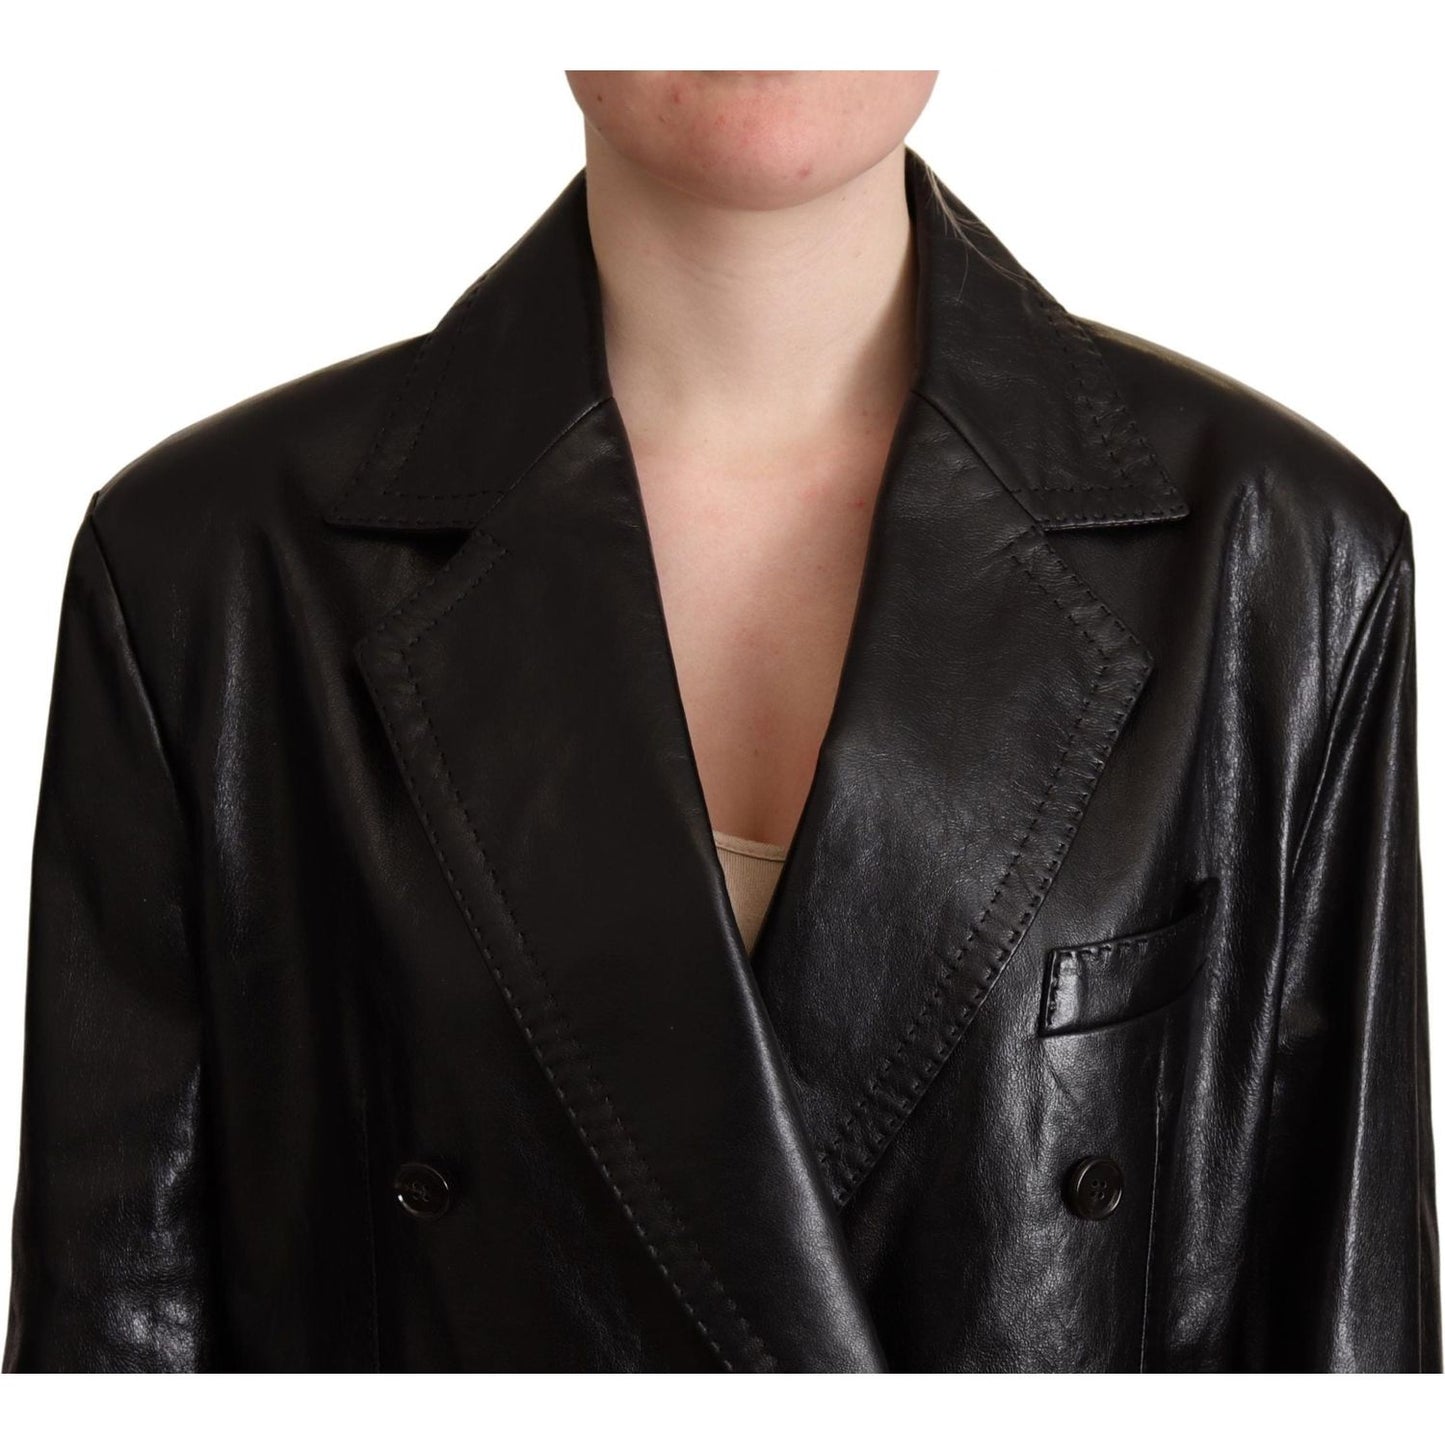 Dolce & Gabbana Elegant Black Leather Double-Breasted Jacket WOMAN COATS & JACKETS black-double-breasted-coat-leather-jacket